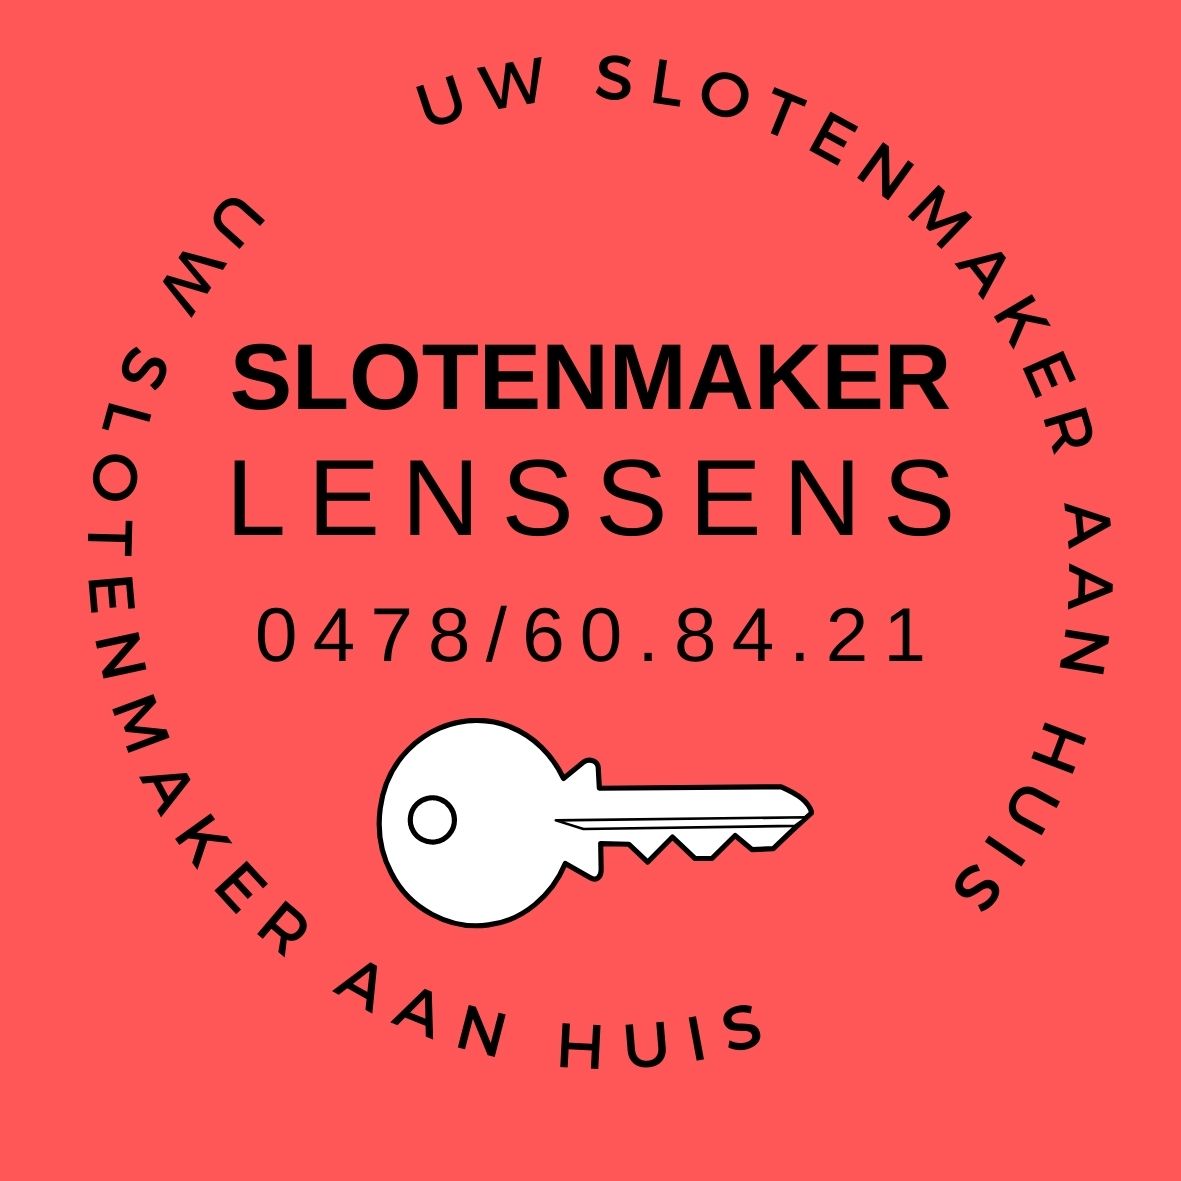 slotenmakers Sint-Lambrechts-Woluwe Slotenmaker Lenssens